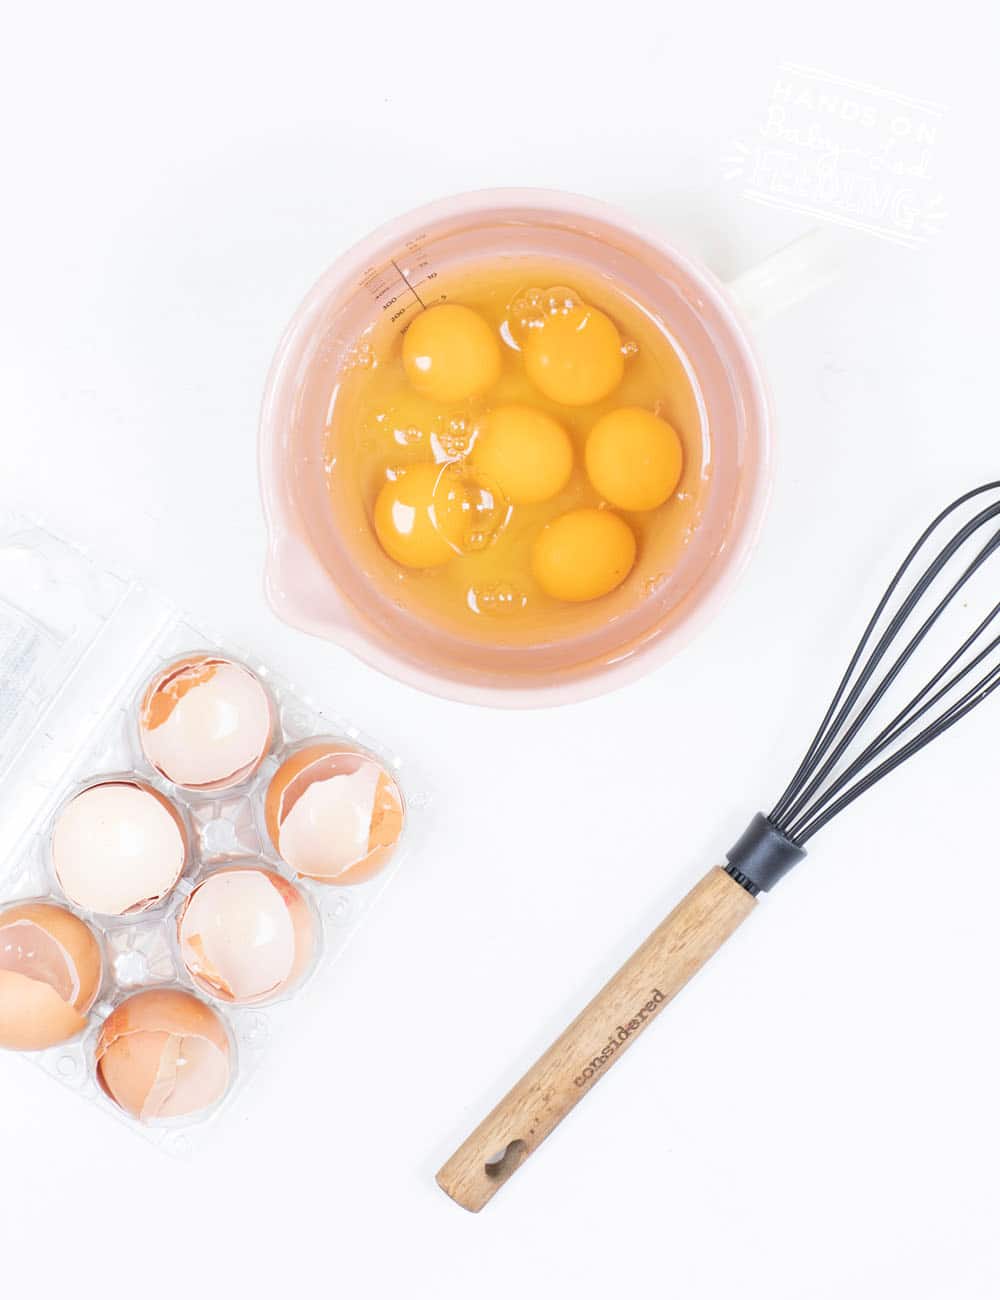 six unbeaten eggs in a bowl